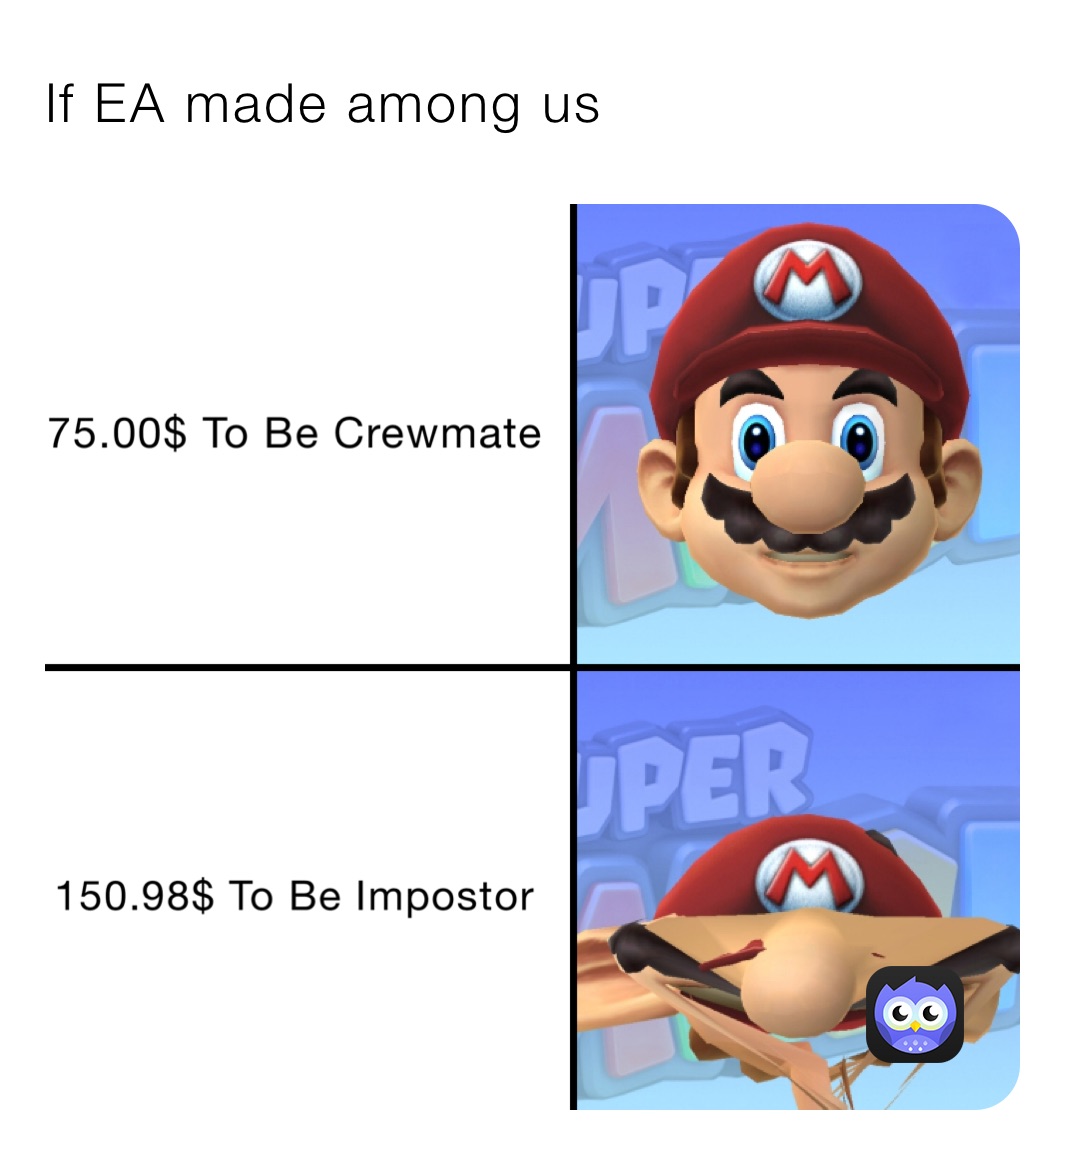 If EA made among us